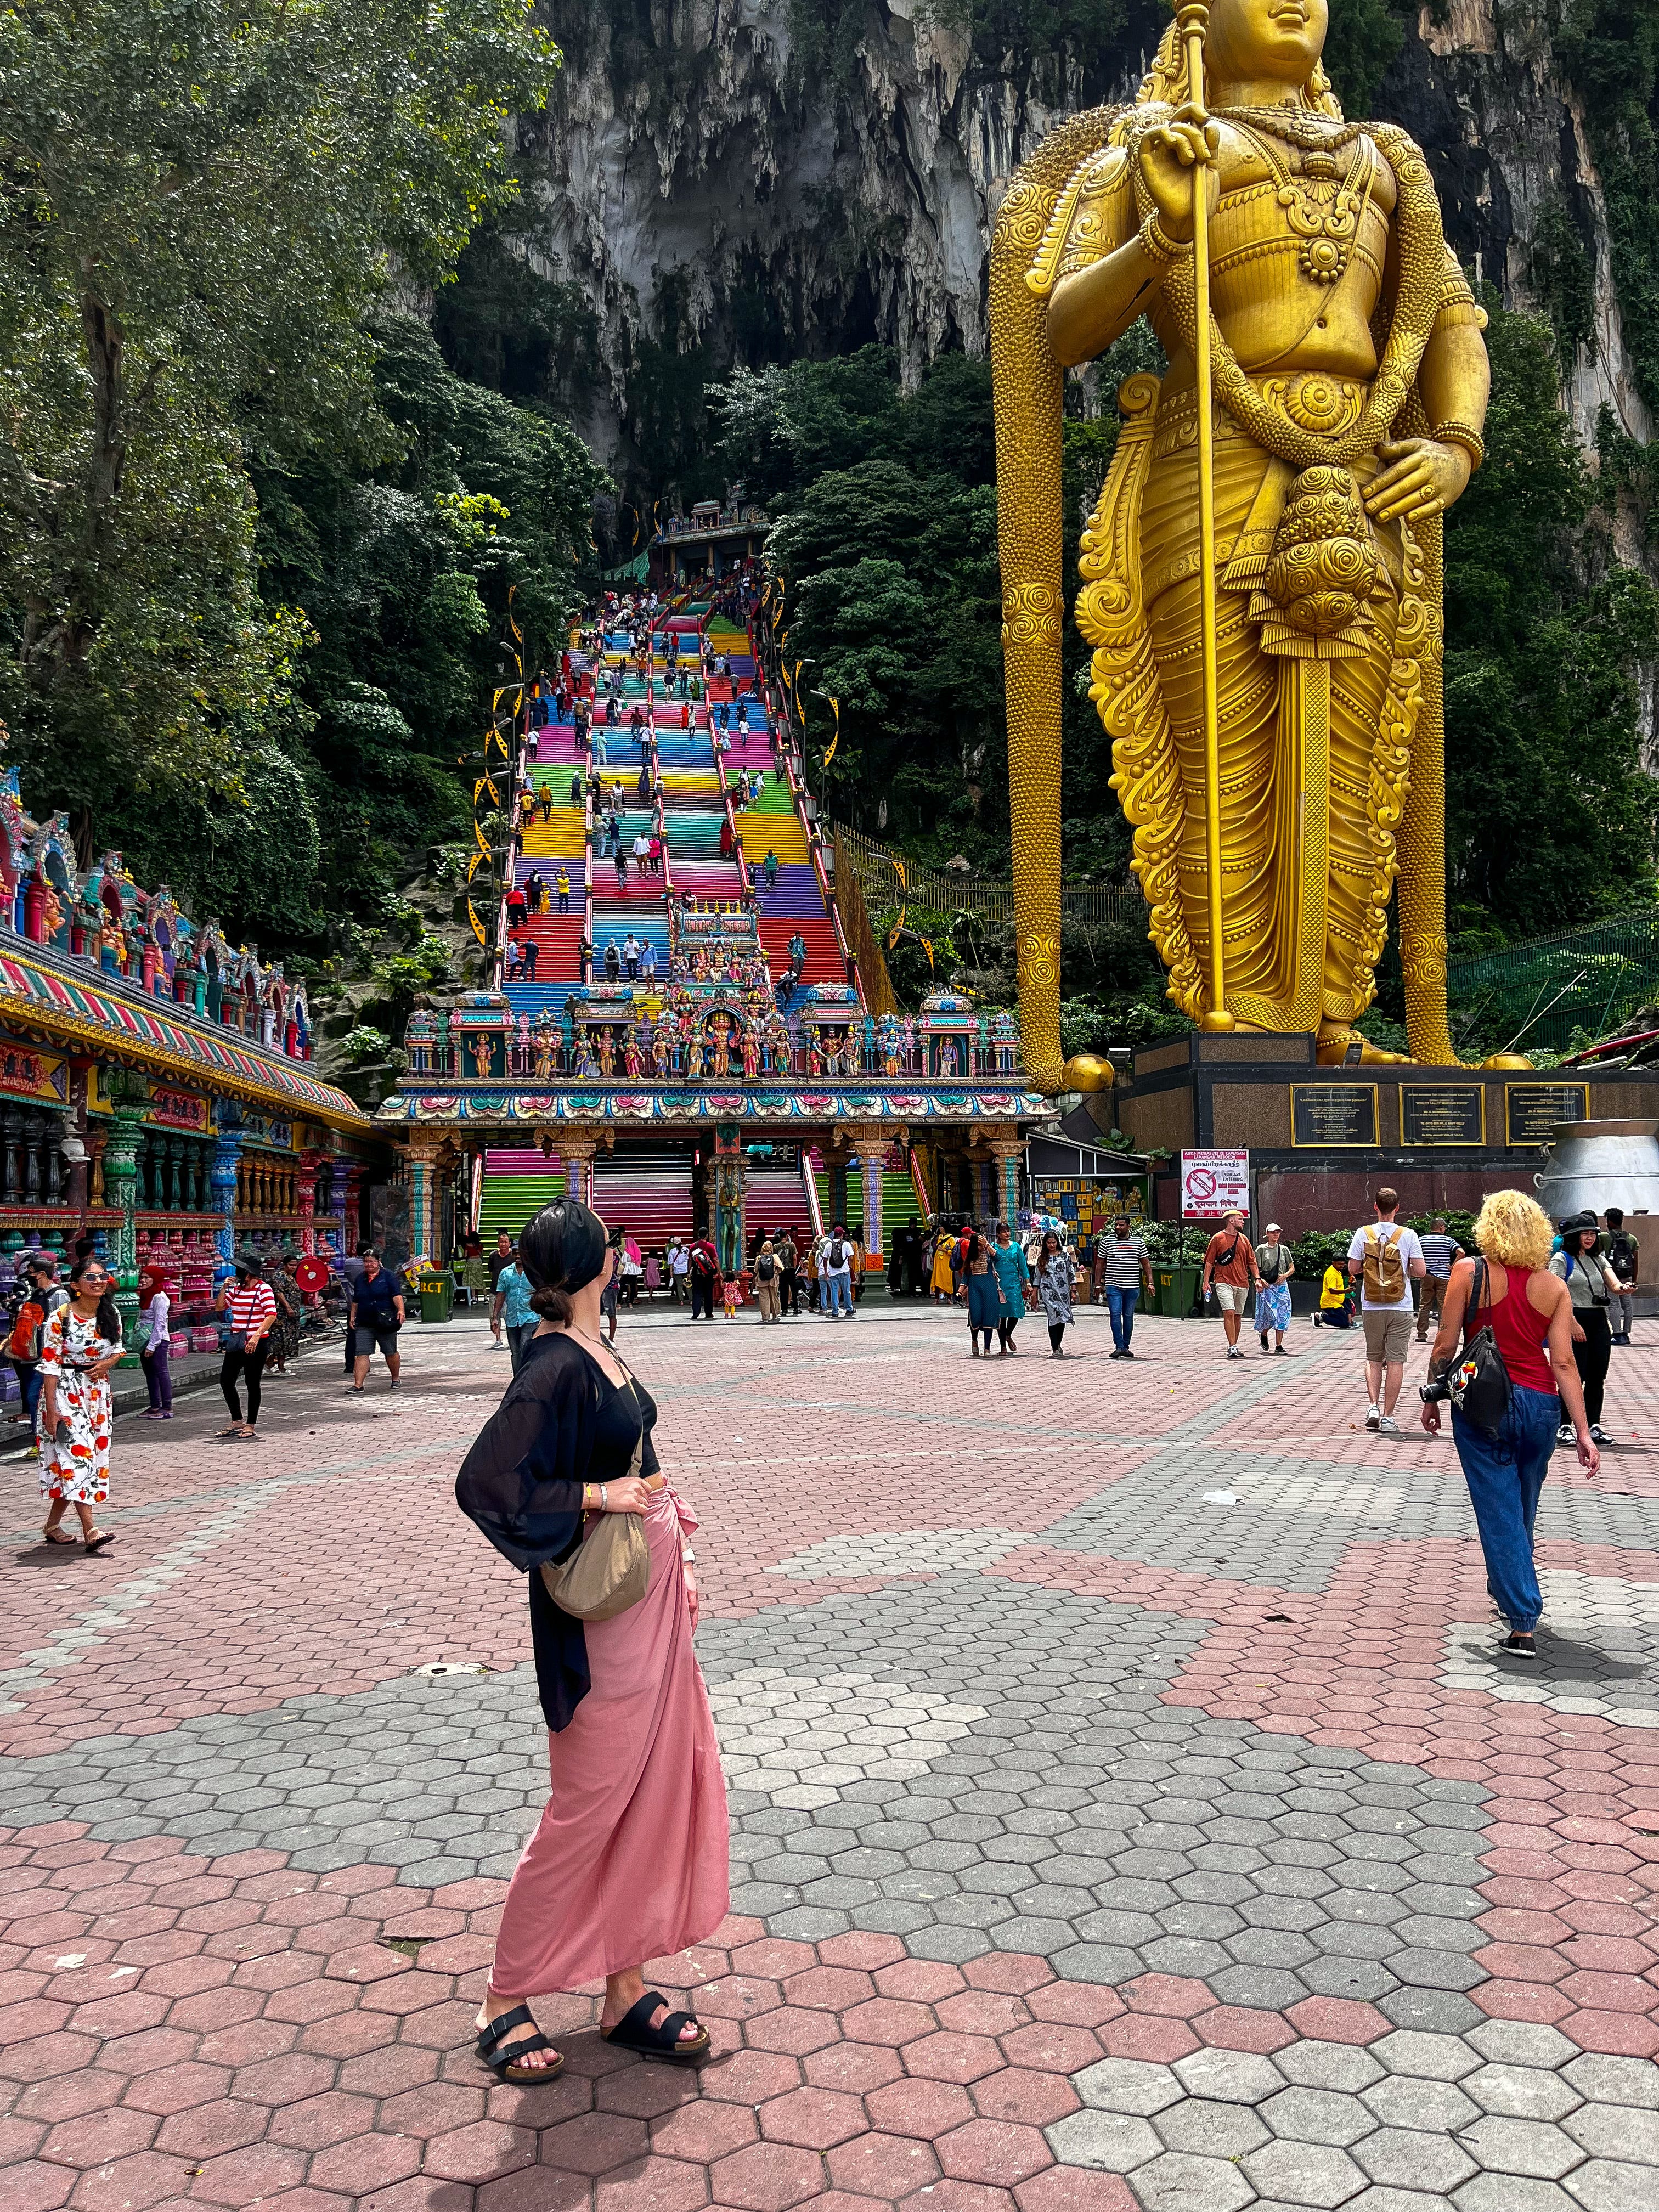 Tara in Malaysia